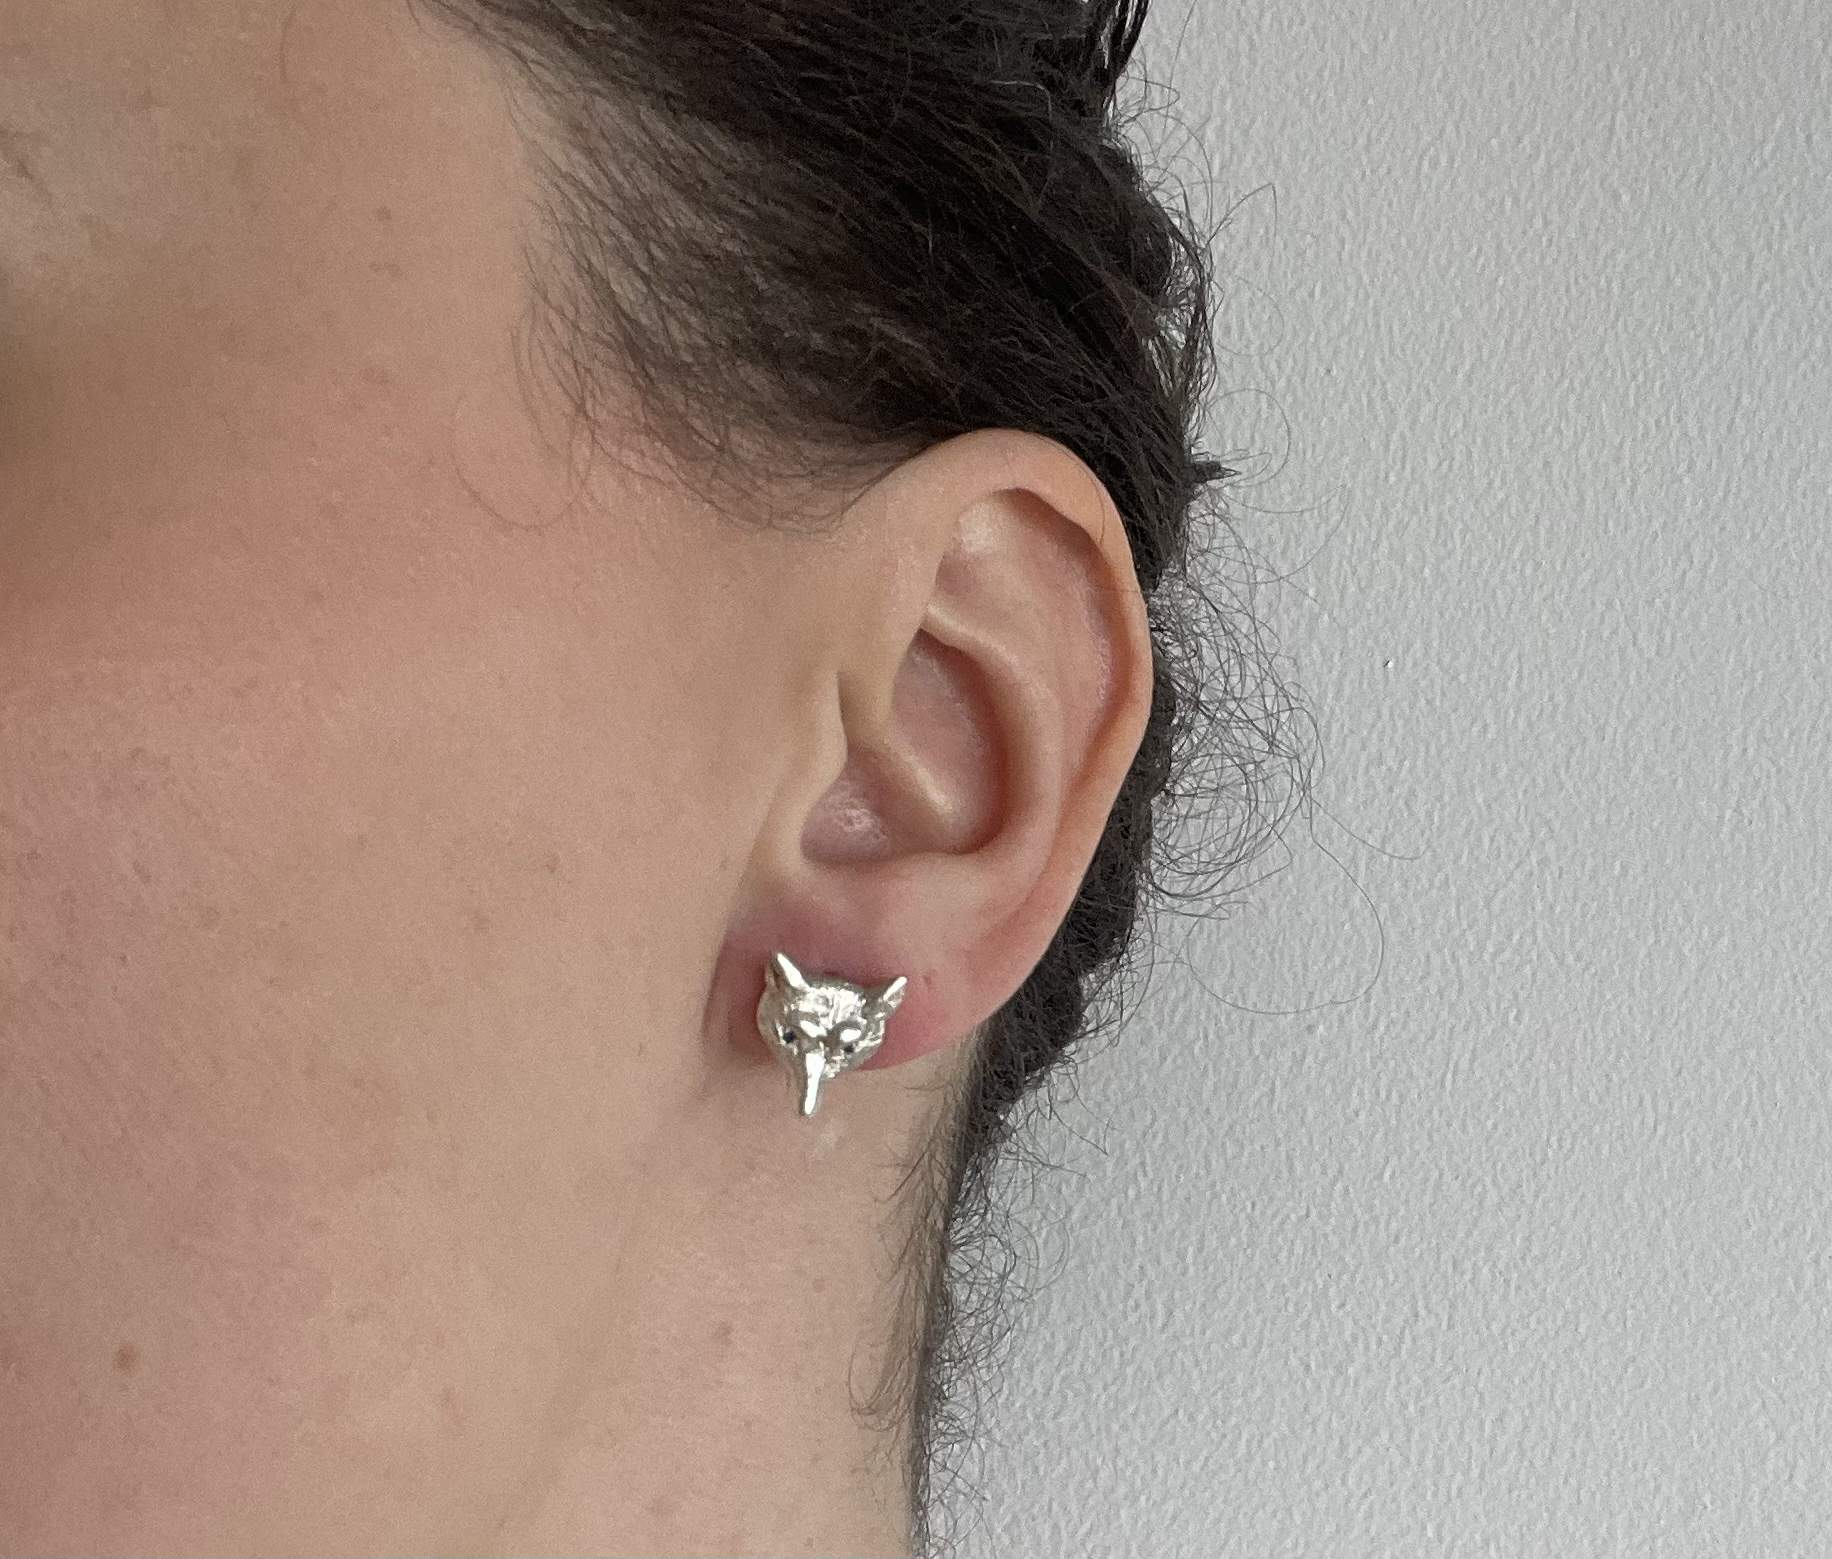 Fox earrings